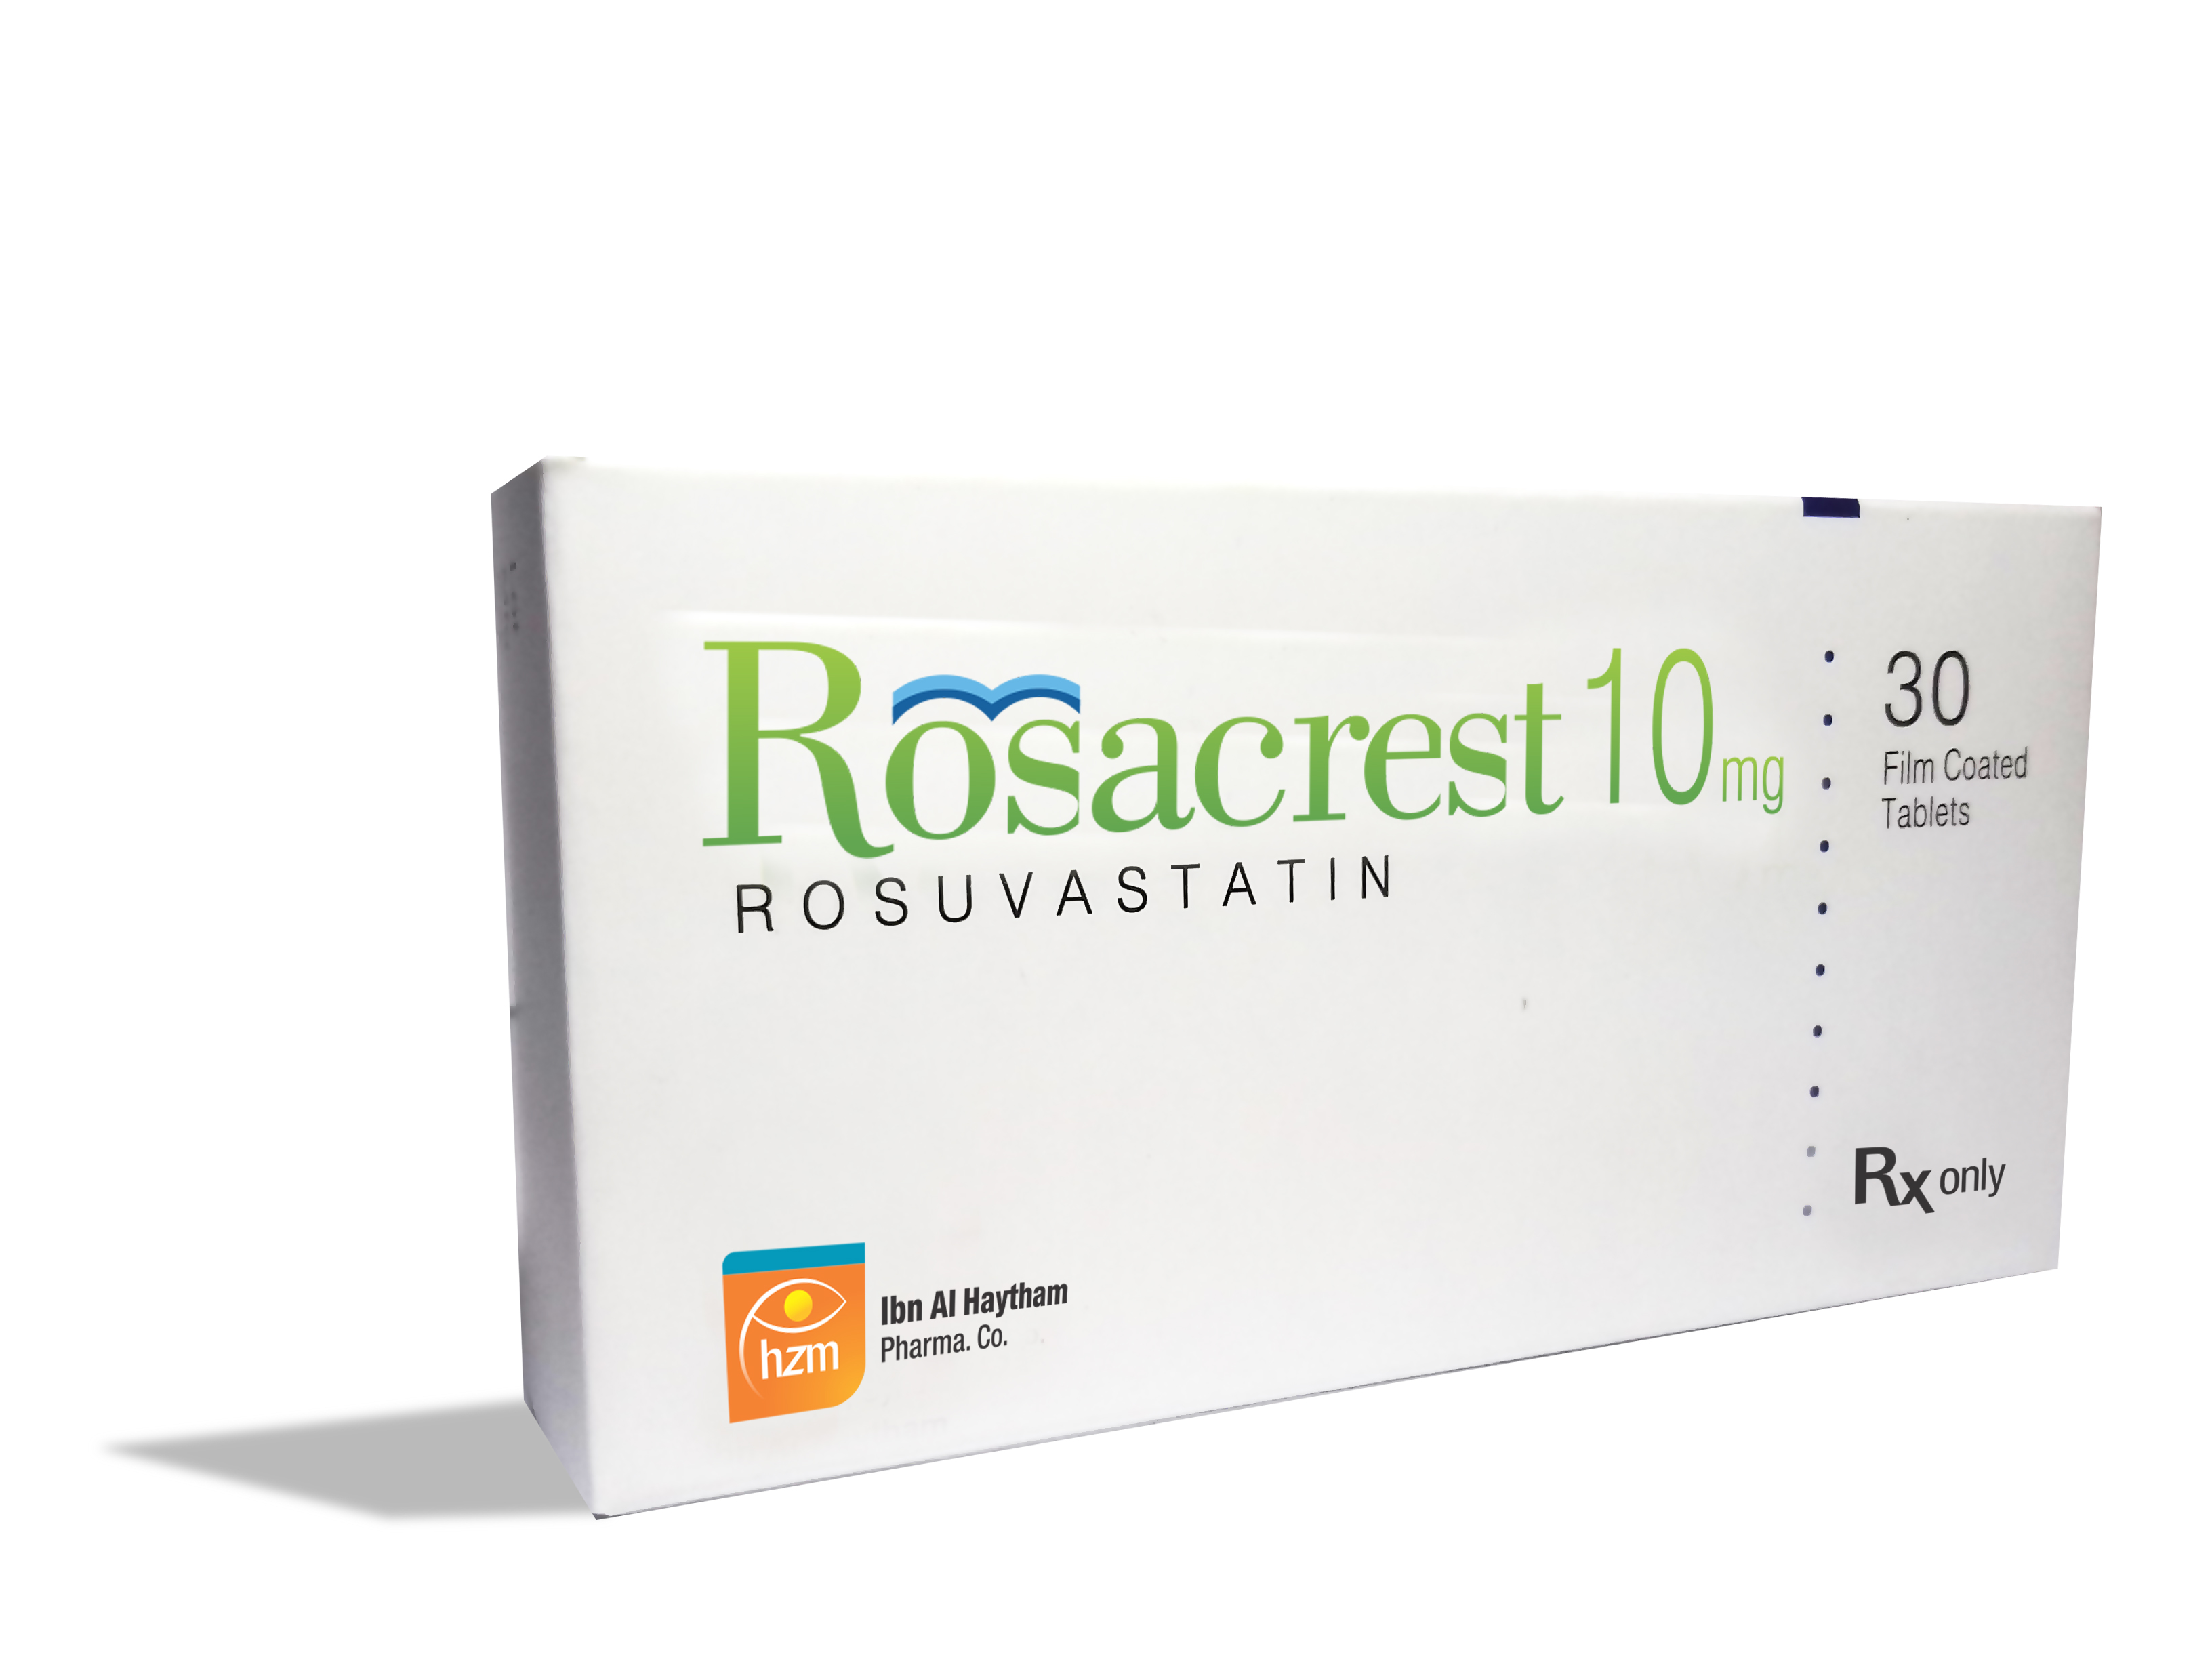 Rosacrest 10